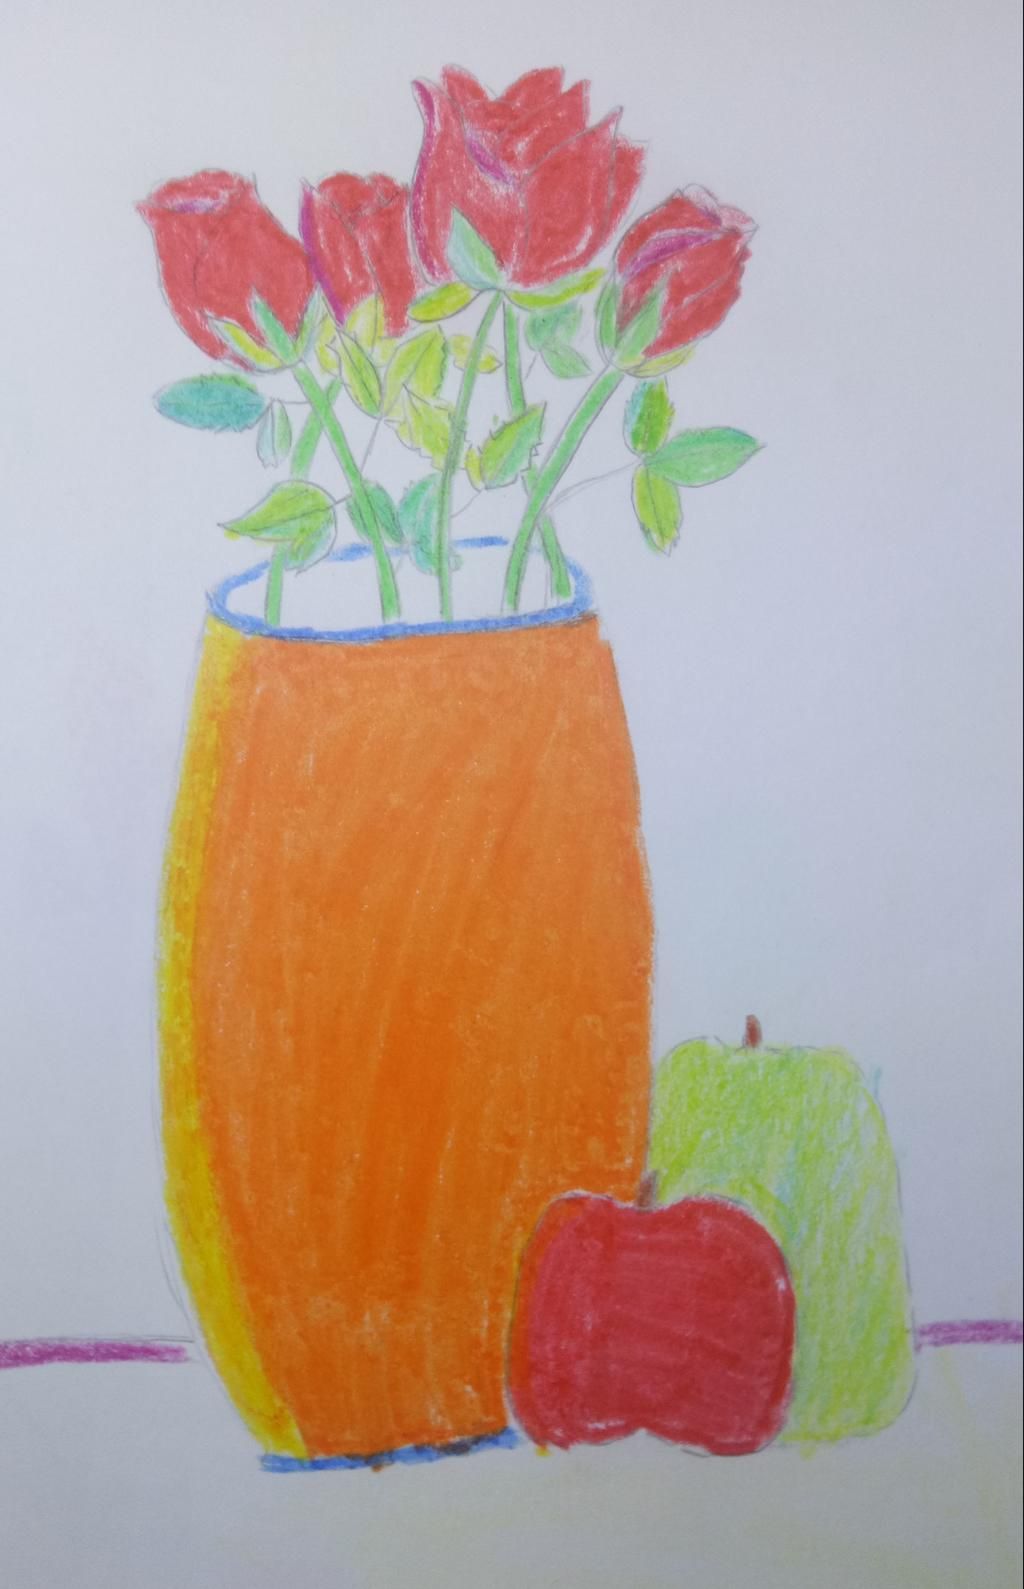 Cùng xem họa sĩ mô tả hoa và quả trong bức tranh, tôn vinh sắc đẹp và sự tươi mới của các loại hoa và quả.